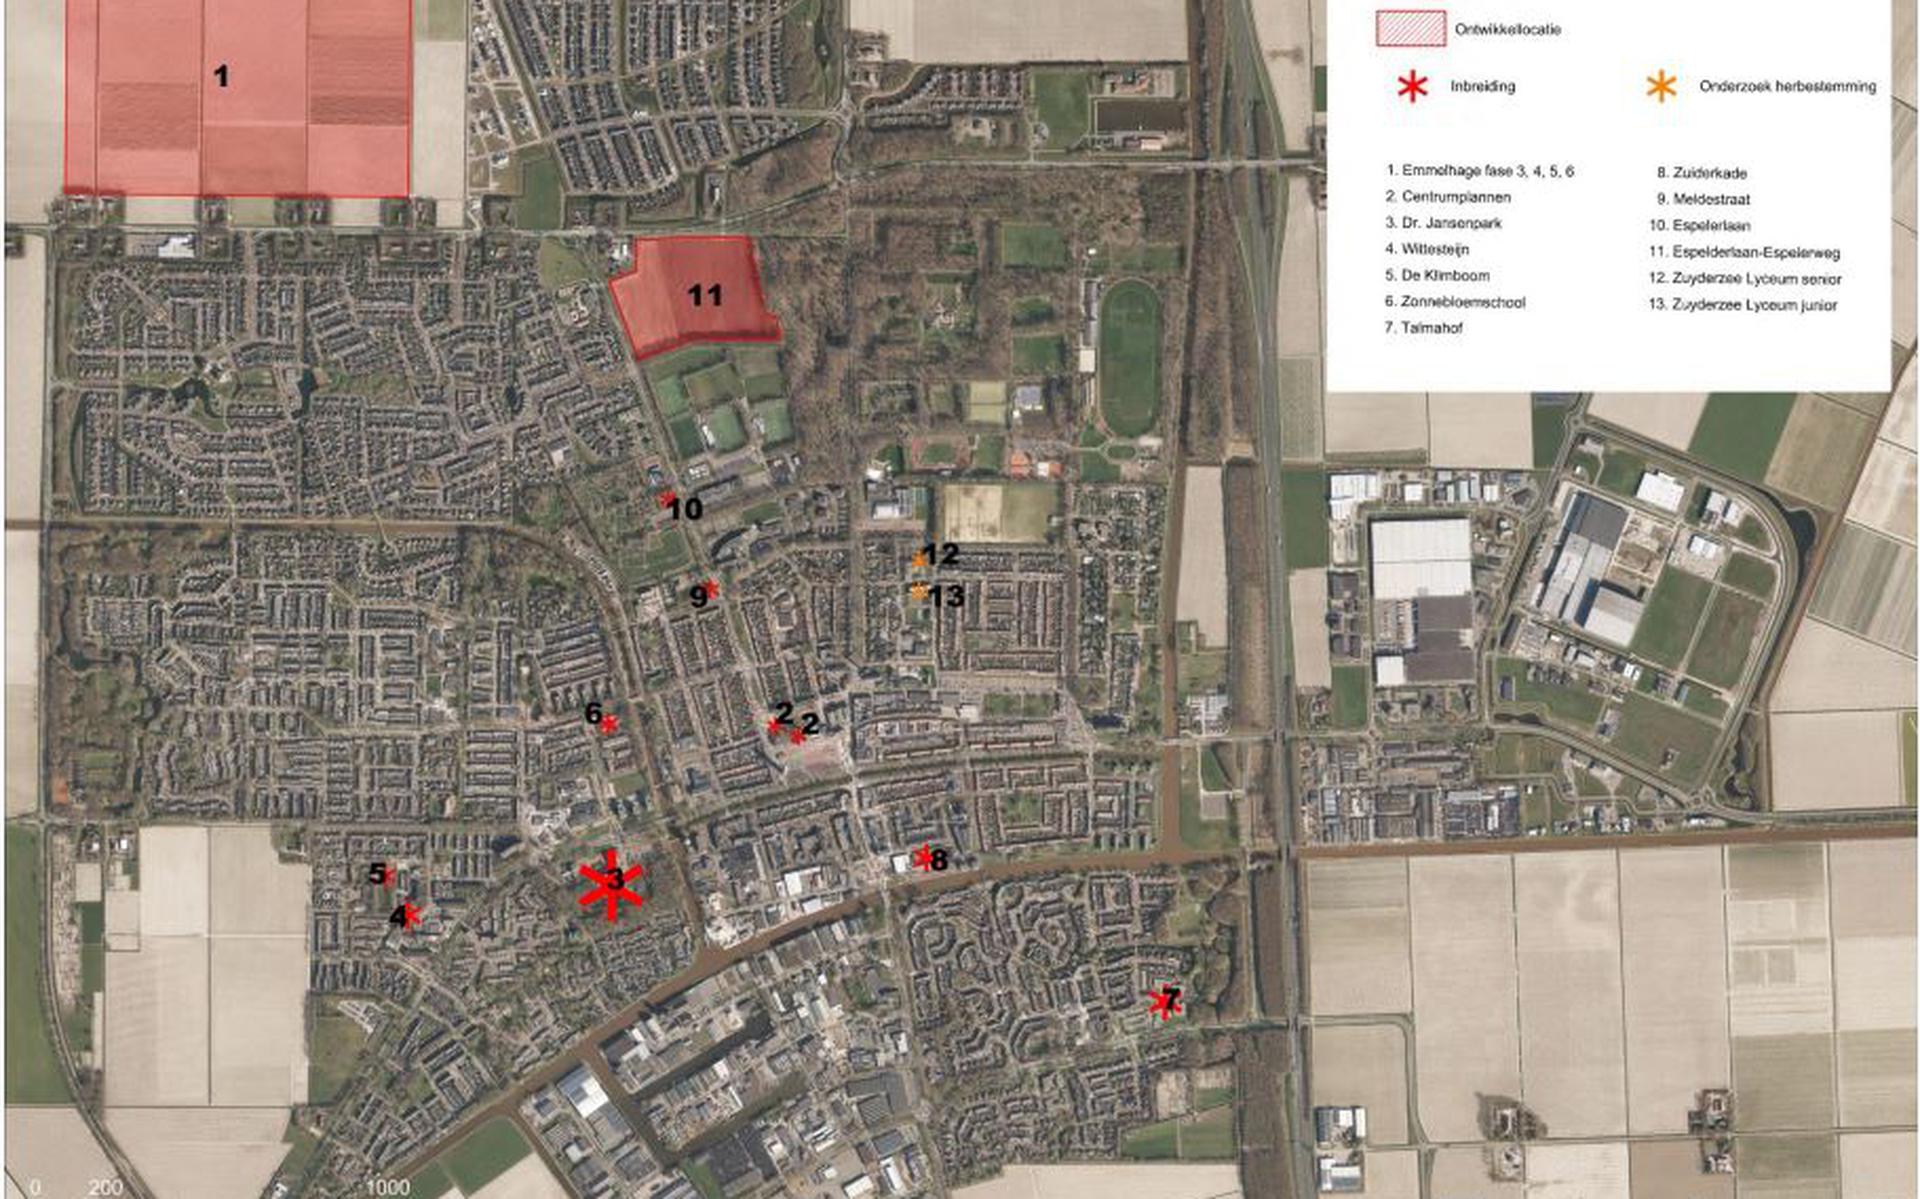 Op de kavel ten zuiden van de Oude Espelerweg (nummer 11 op dit kaartje met ontwikkellocaties) wil de gemeenteraad de komst van 215 woningen mogelijk maken.